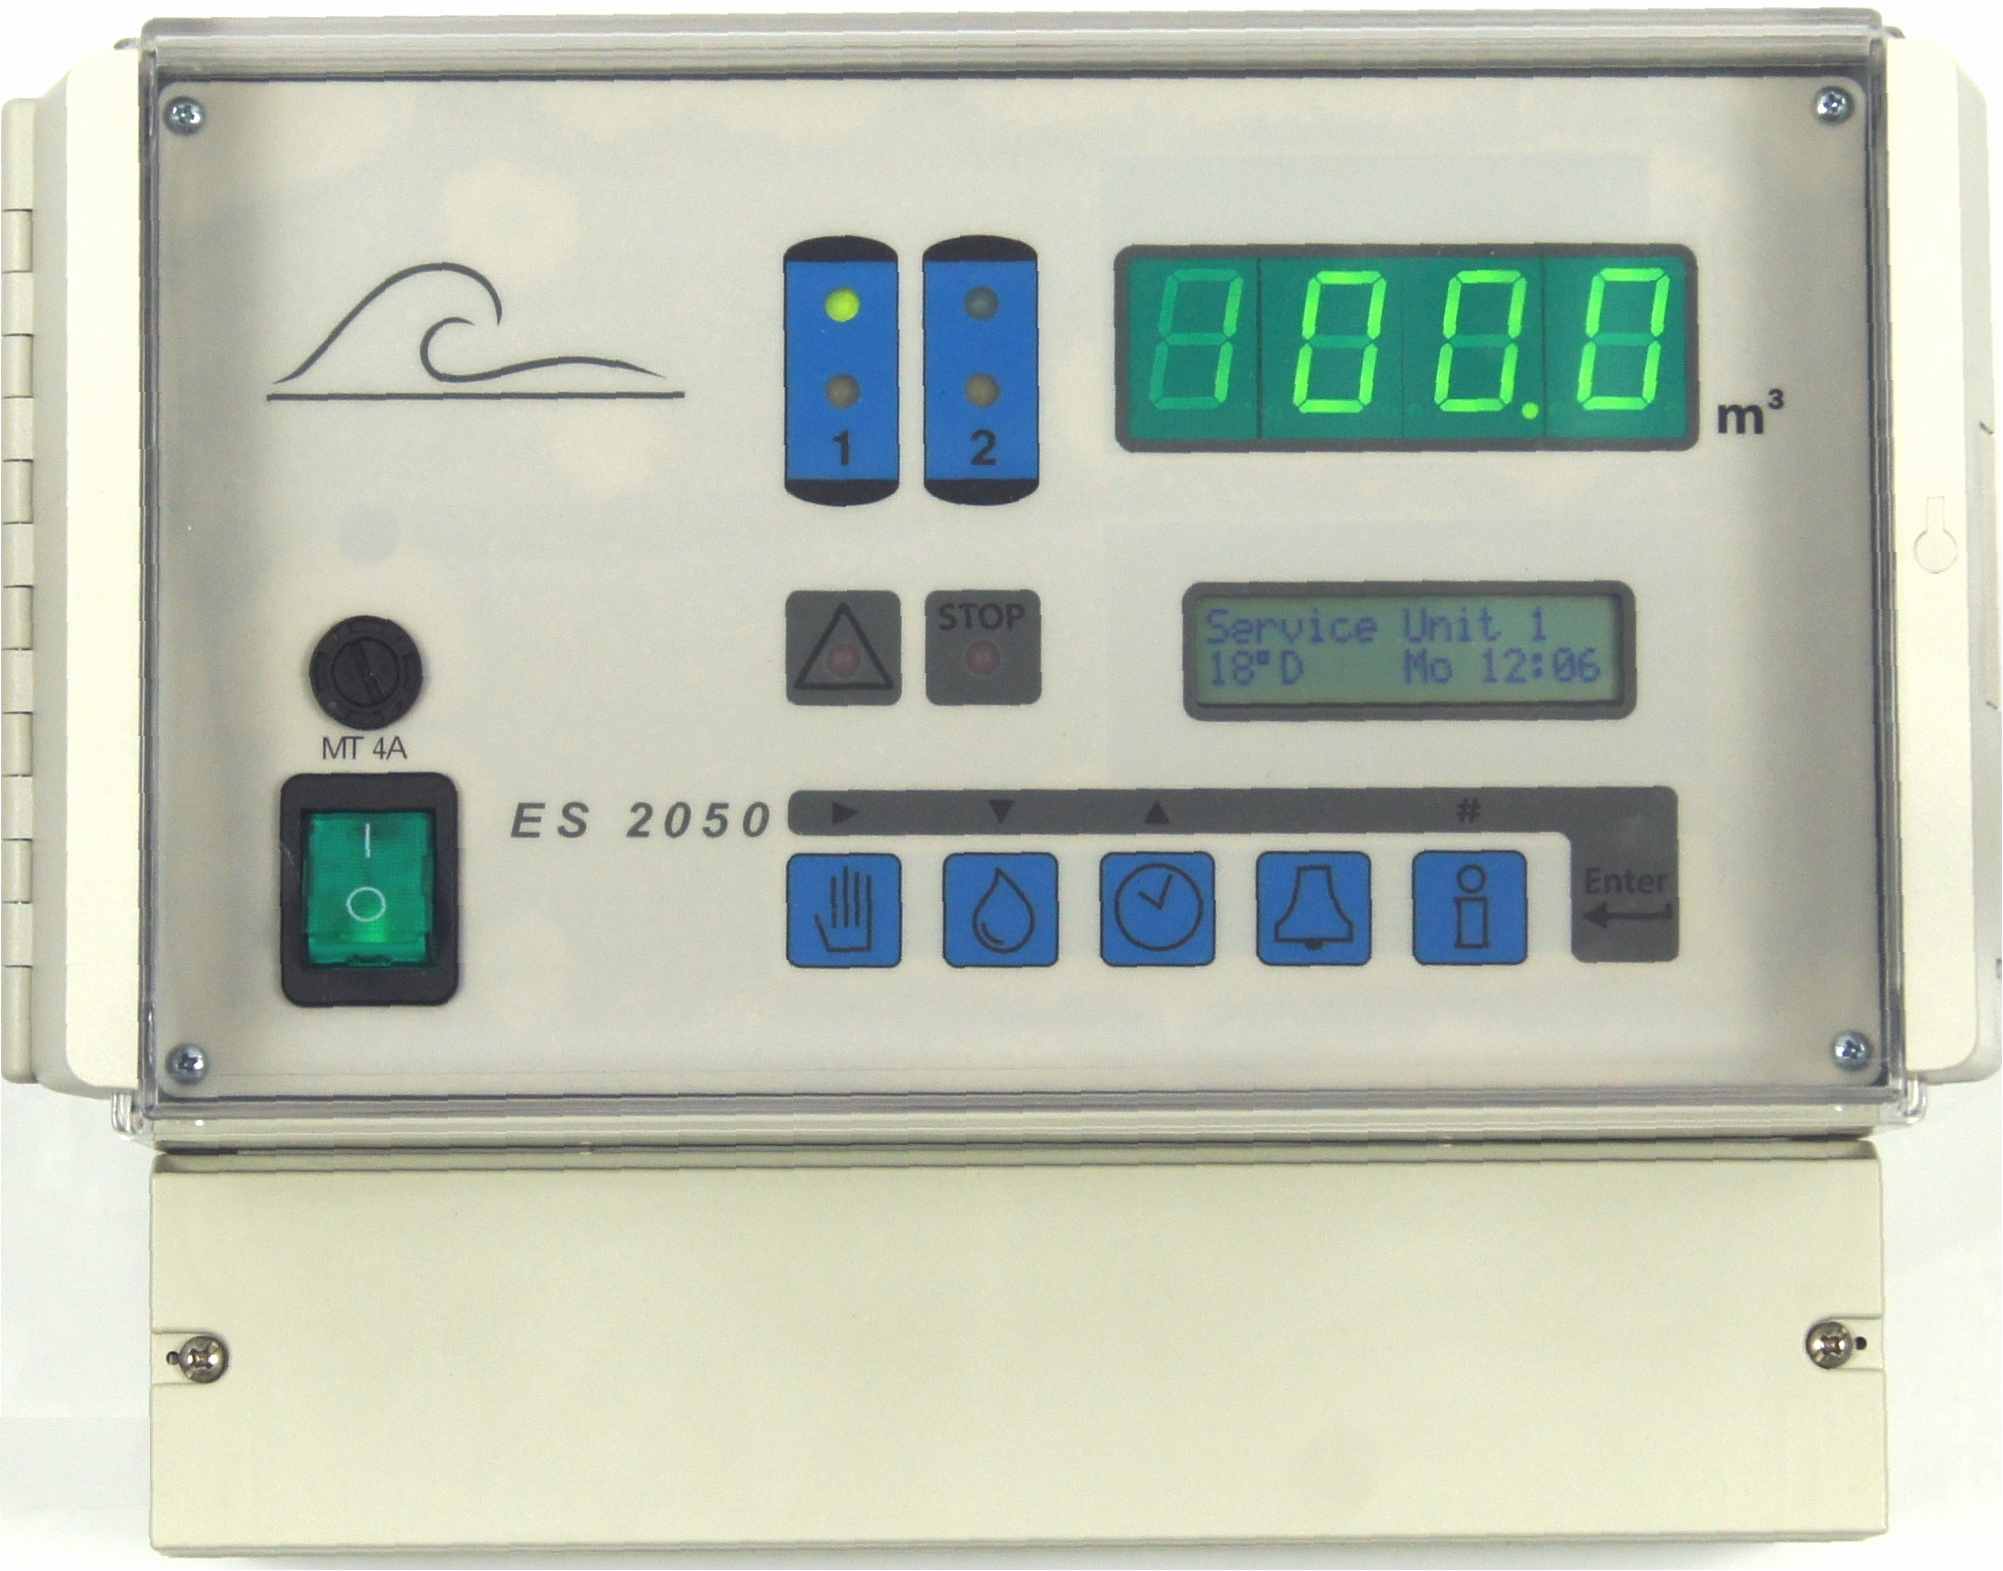 Control unit ES2050